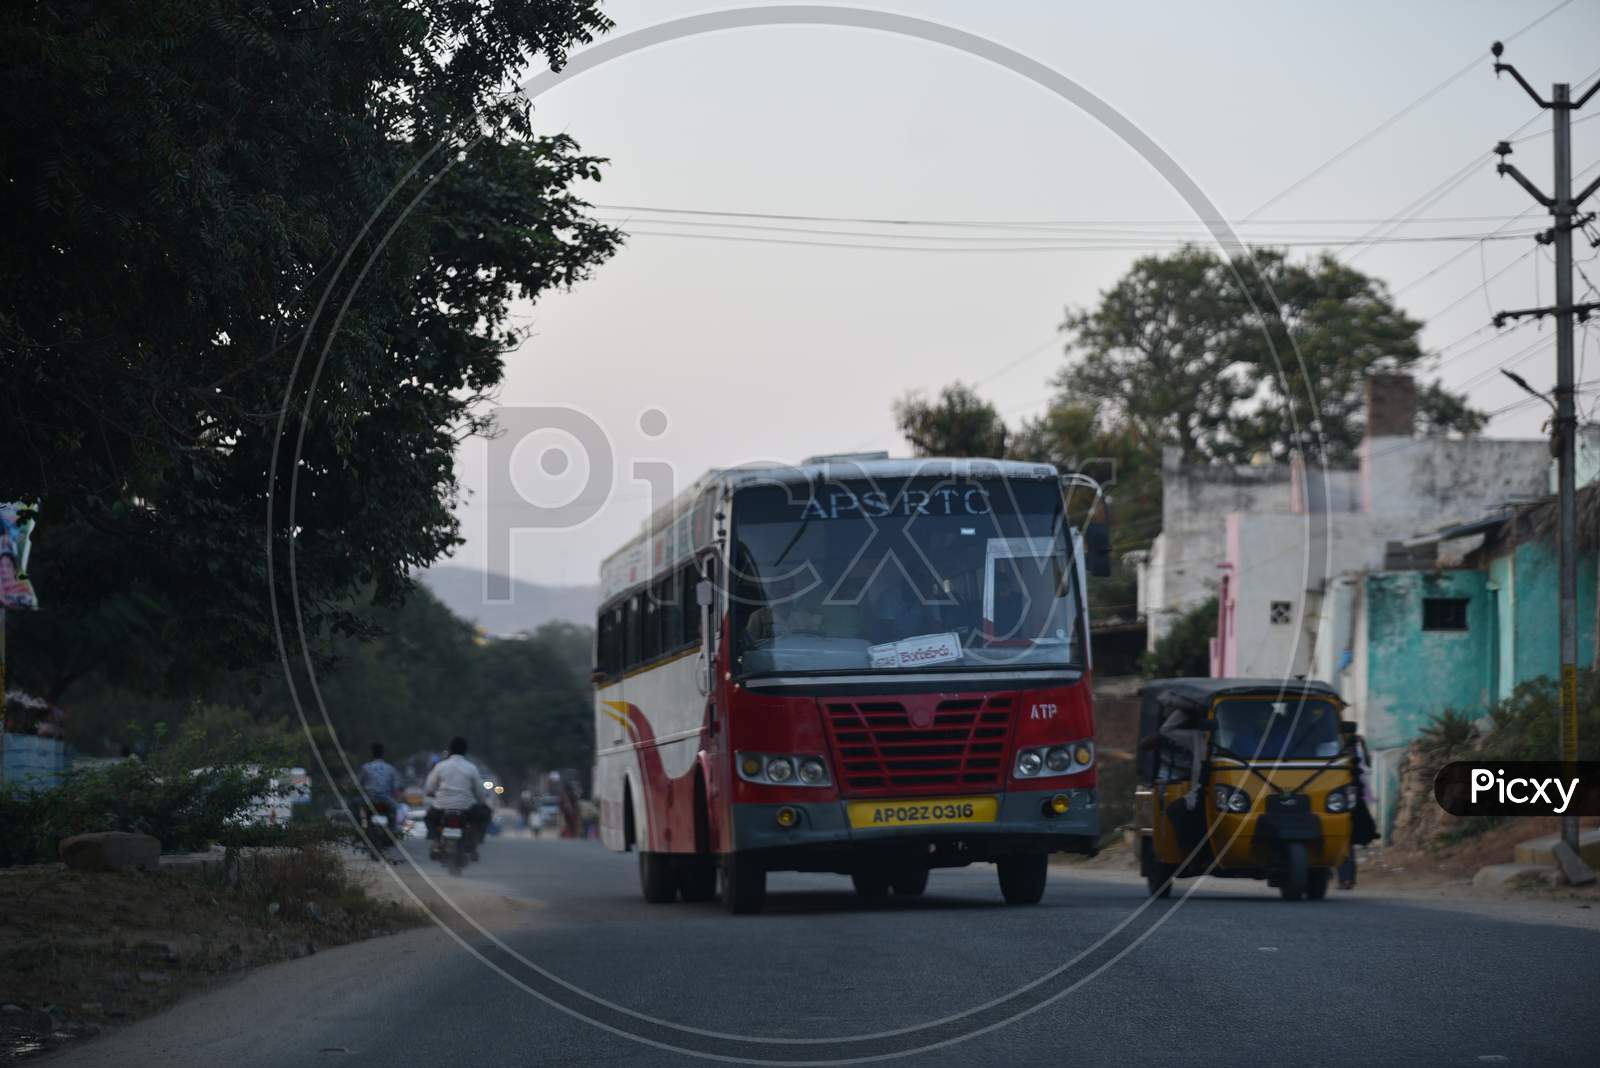 APSRTC Bangalore bus in Penukonda